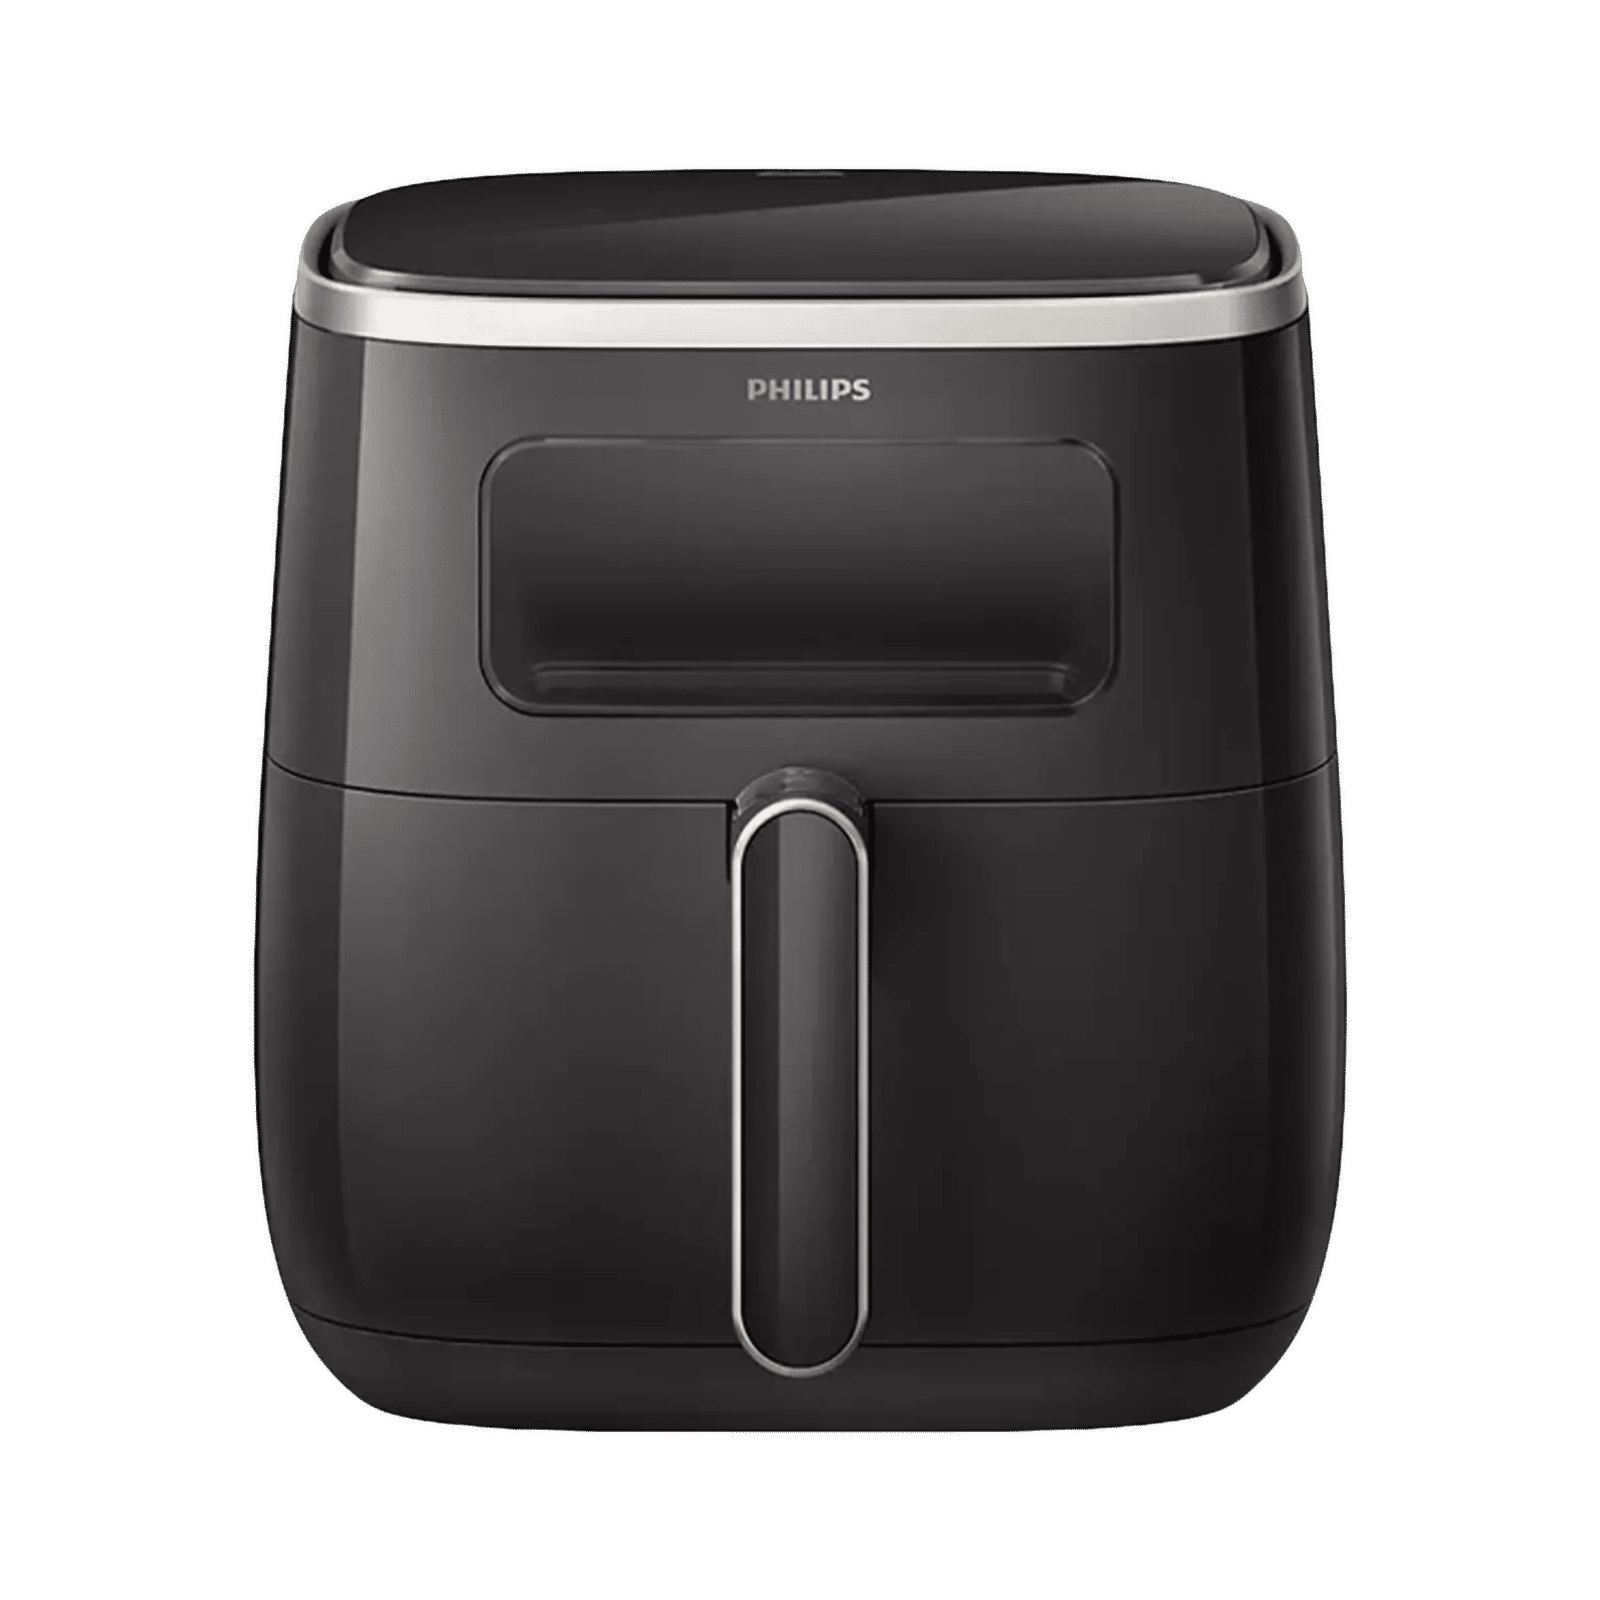 Buy PHILIPS 5.6L 1700 Watt Digital Air Fryer with Rapid Air